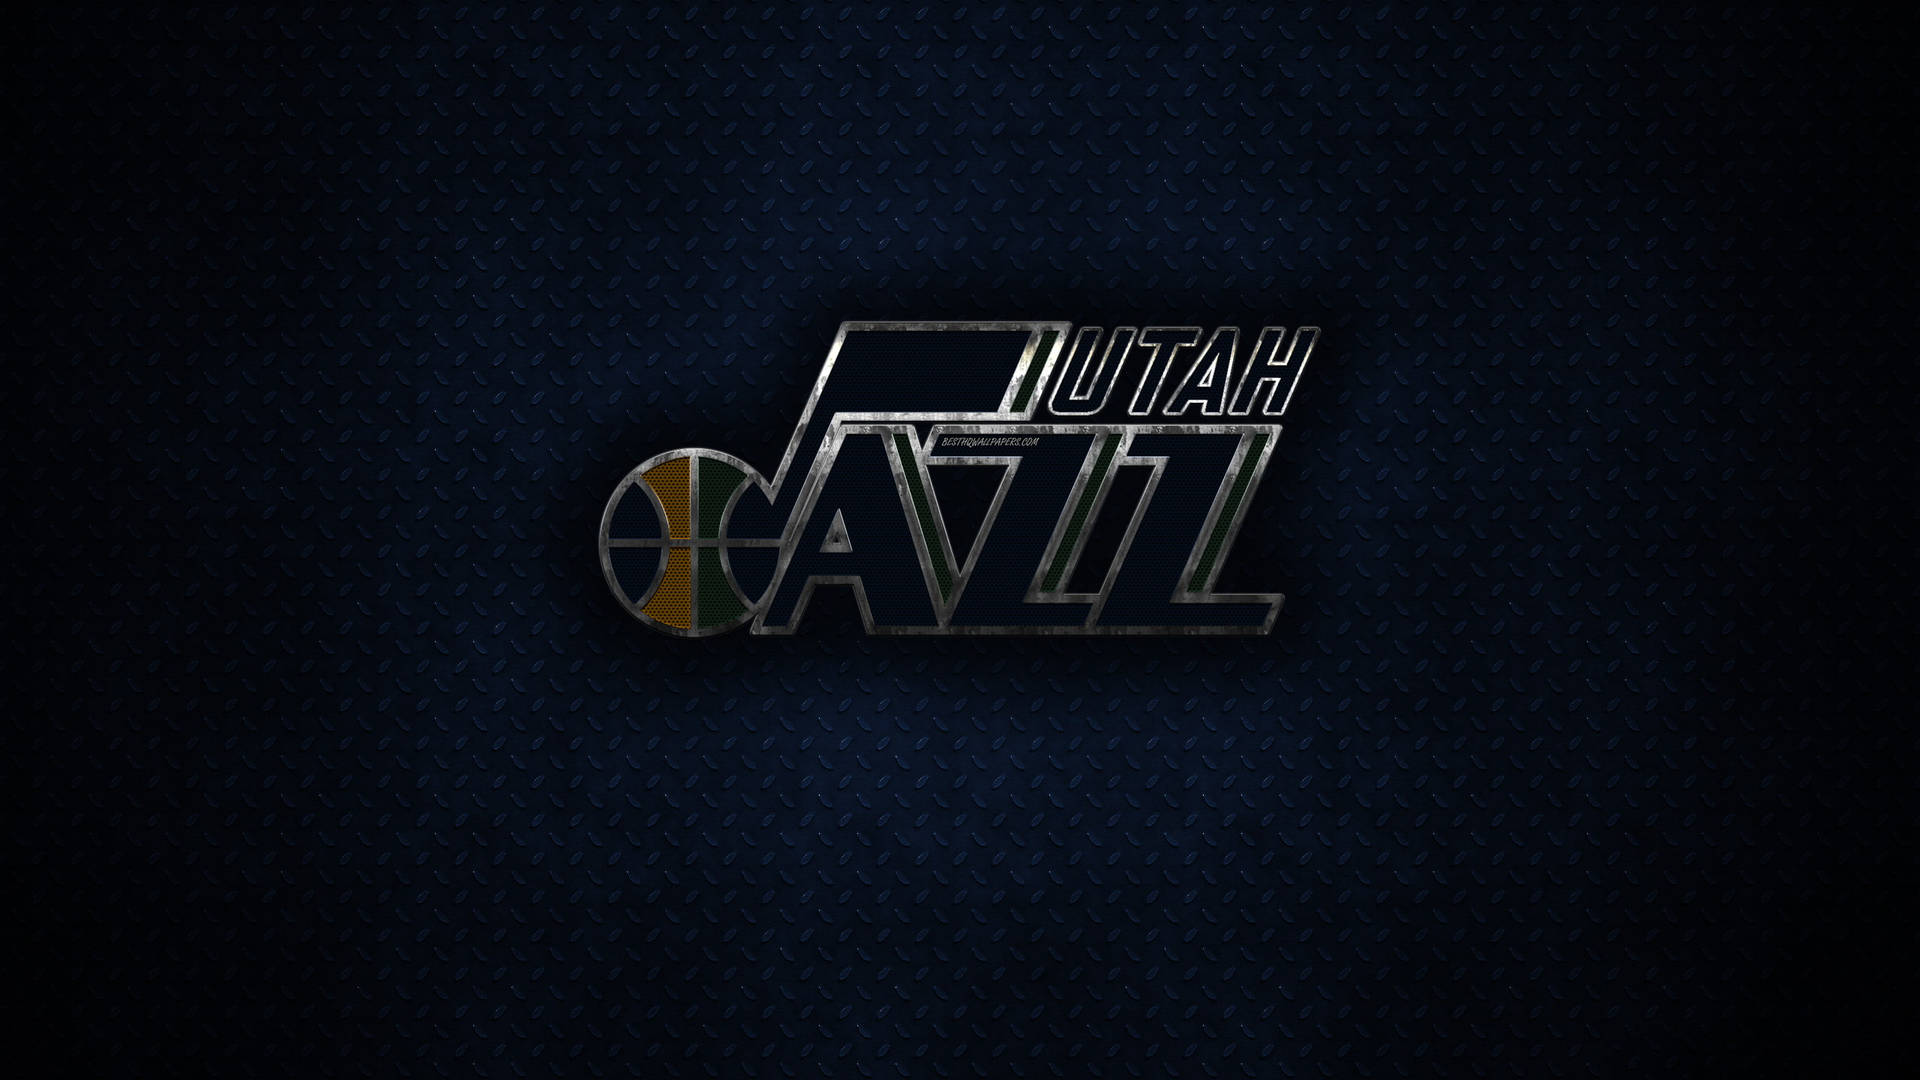 Utah Jazz On Metal Floor Background